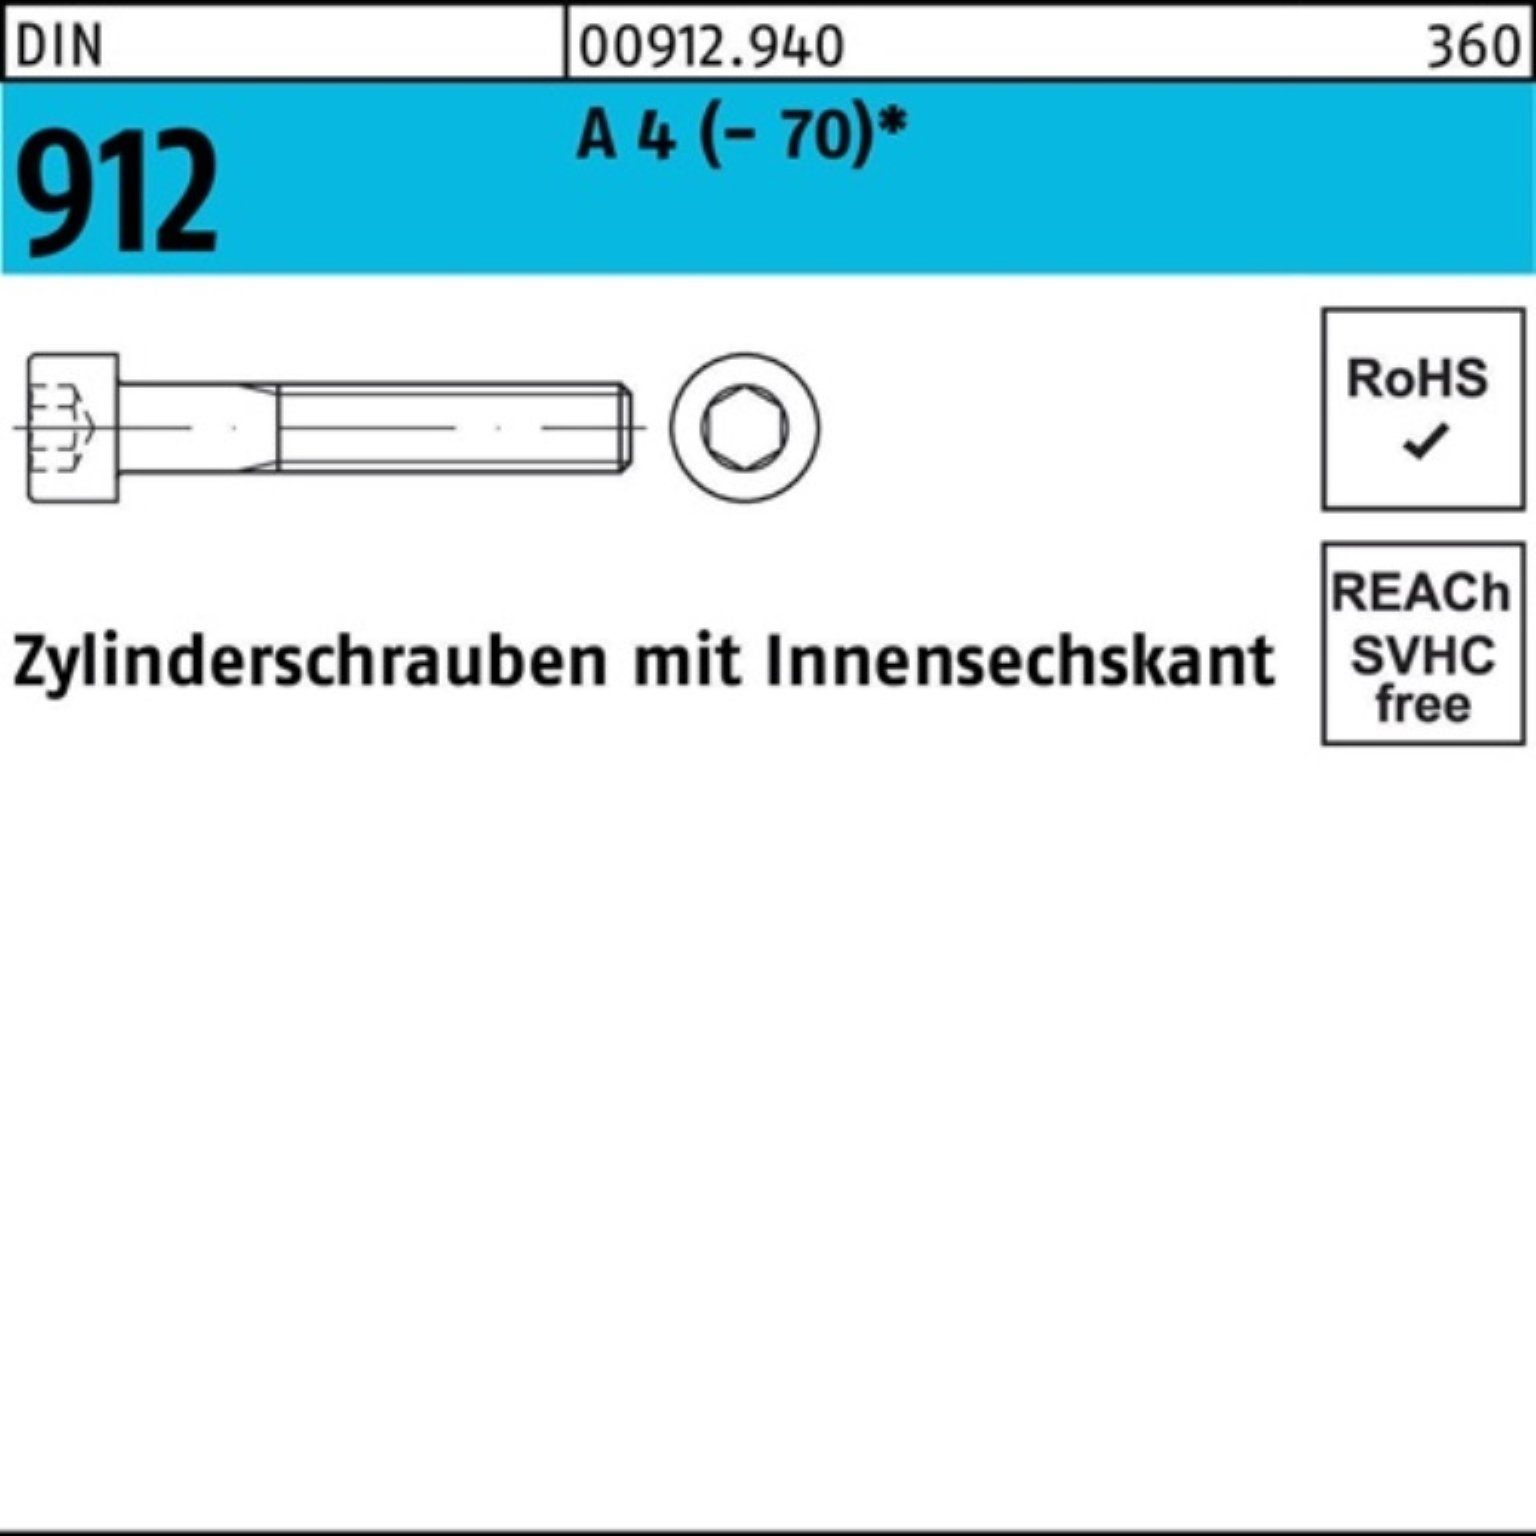 Pack 100 100er 912 Innen-6kt 4 (70) DIN 6 St Zylinderschraube Zylinderschraube M3x Reyher A